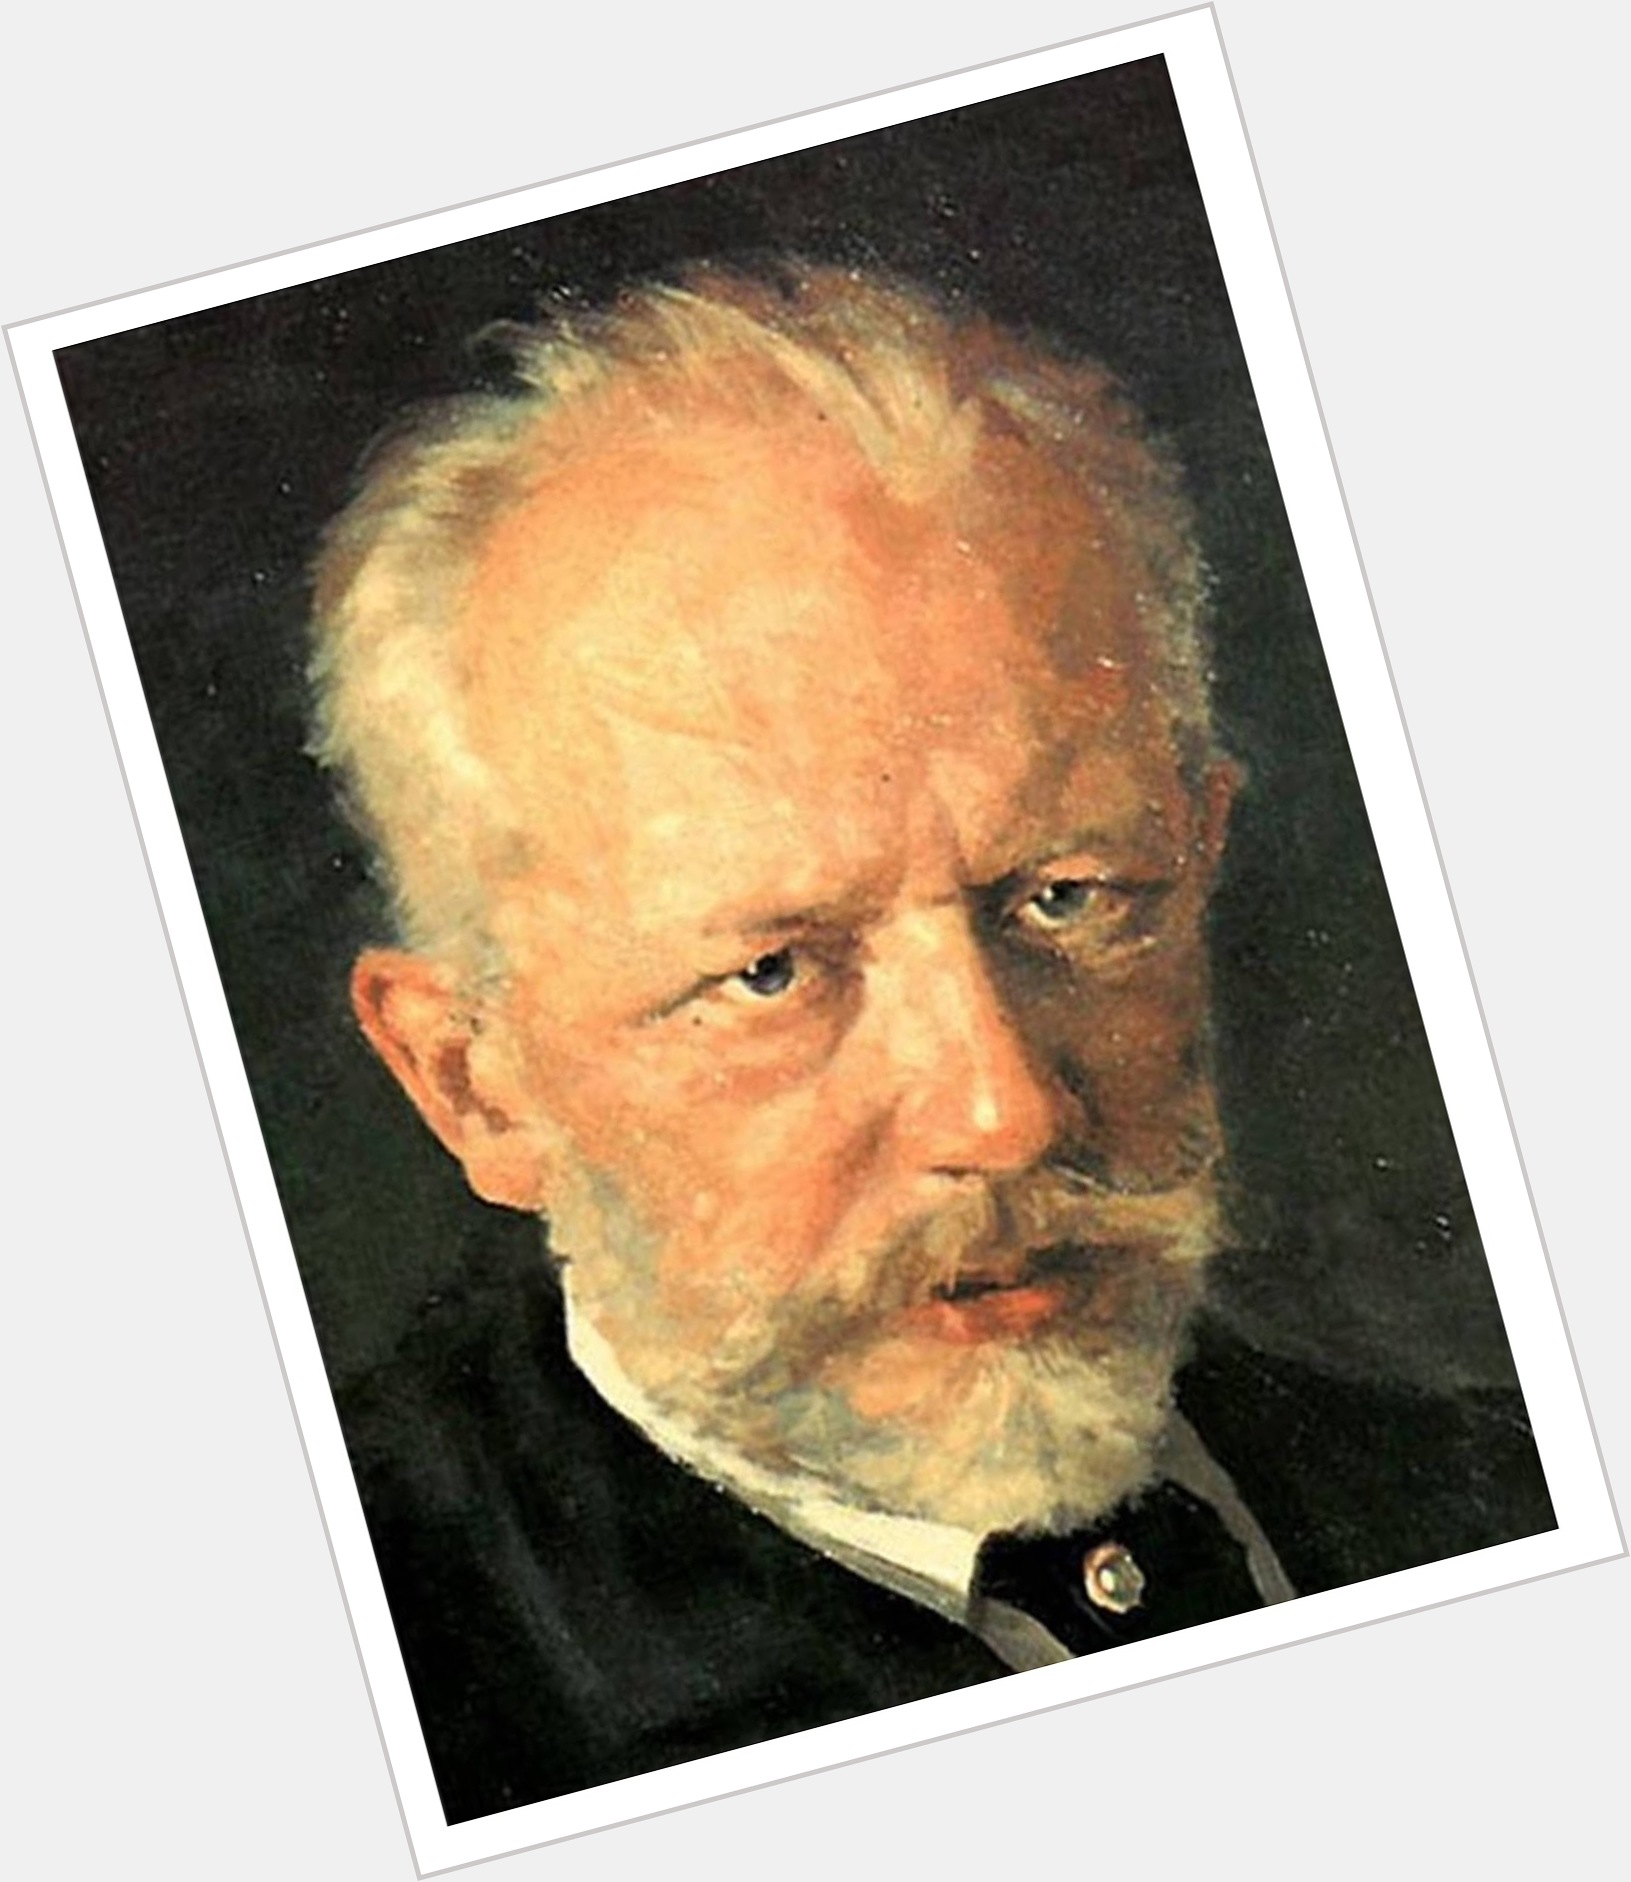 pyotr ilyich tchaikovsky portrait 3.jpg